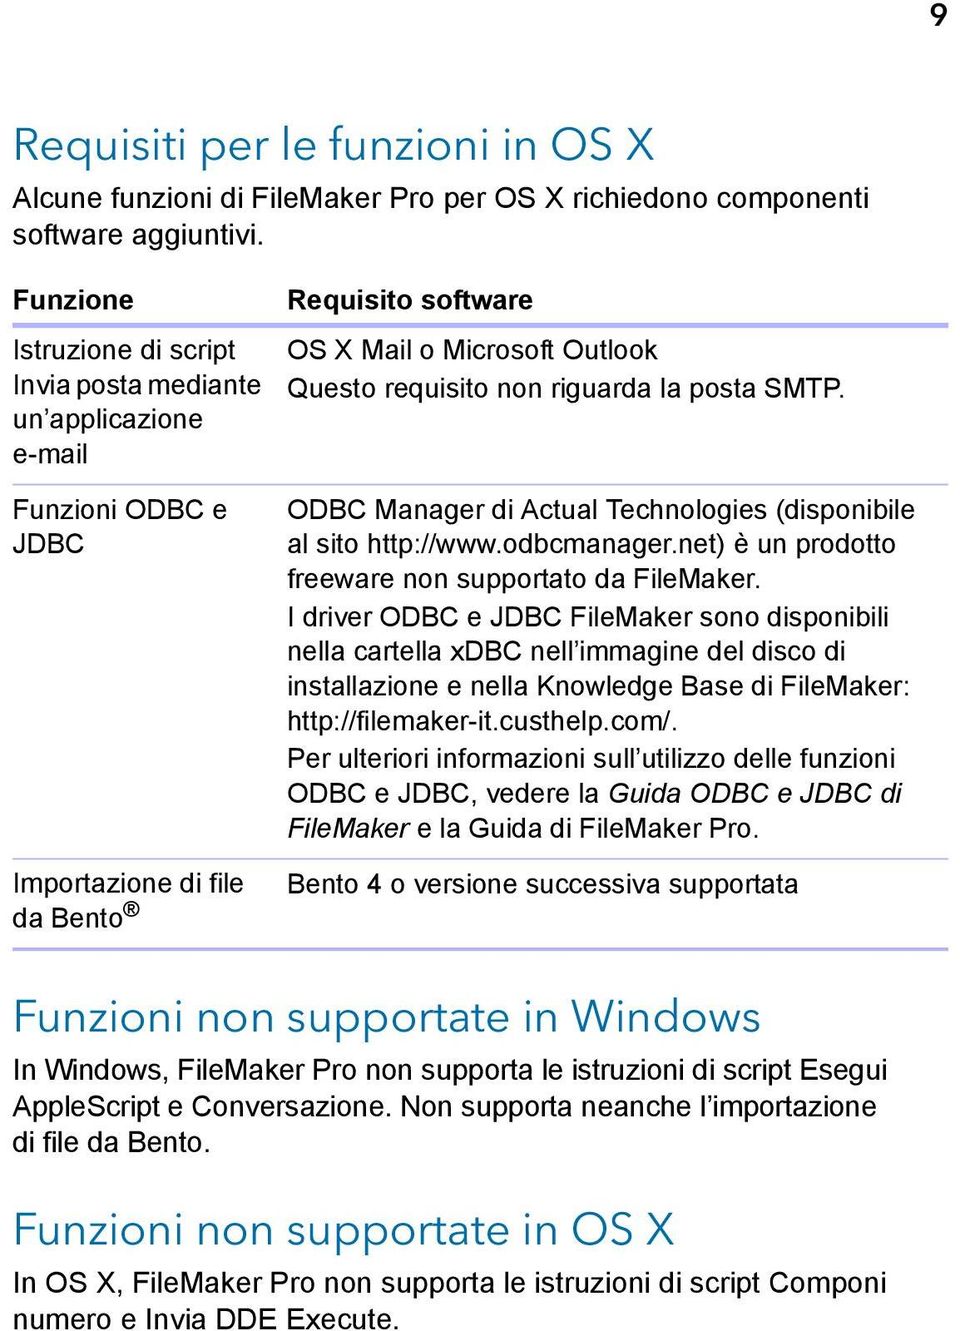 un applicazione e-mail Funzioni ODBC e JDBC Importazione di file da Bento ODBC Manager di Actual Technologies (disponibile al sito http://www.odbcmanager.